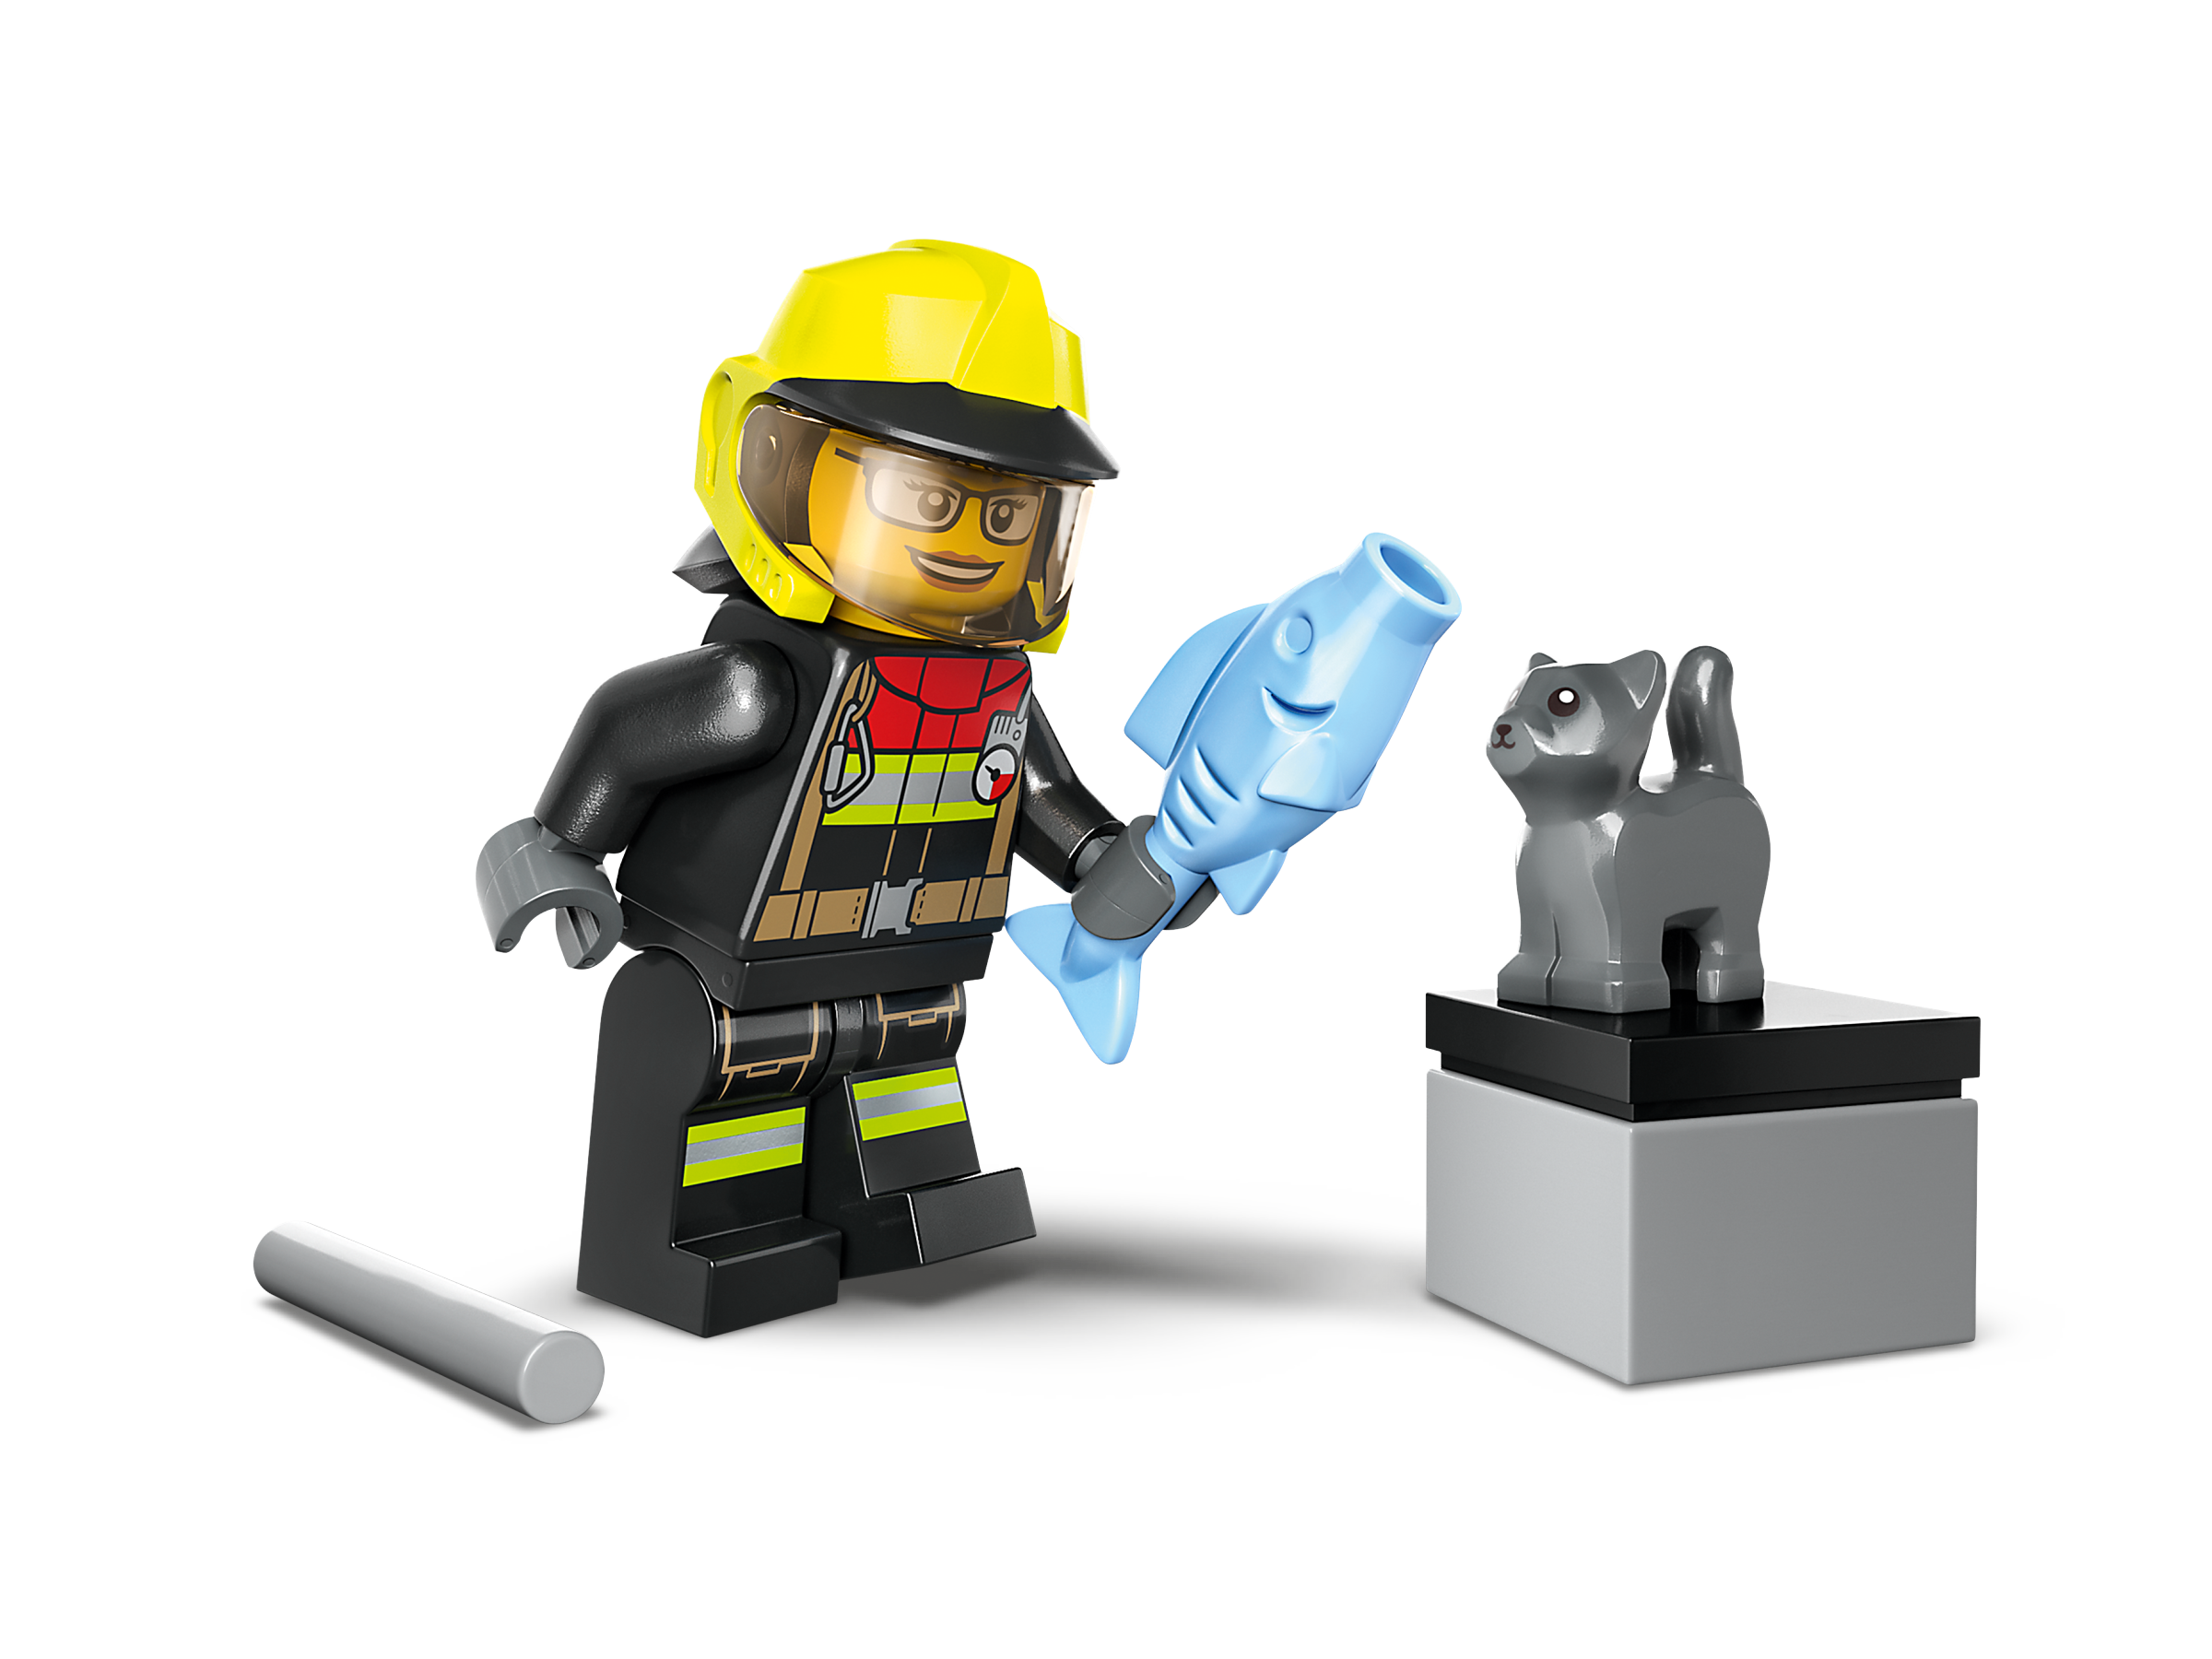 LEGO® 60393 Sauvetage en tout-terrain des pompiers LEGO® City